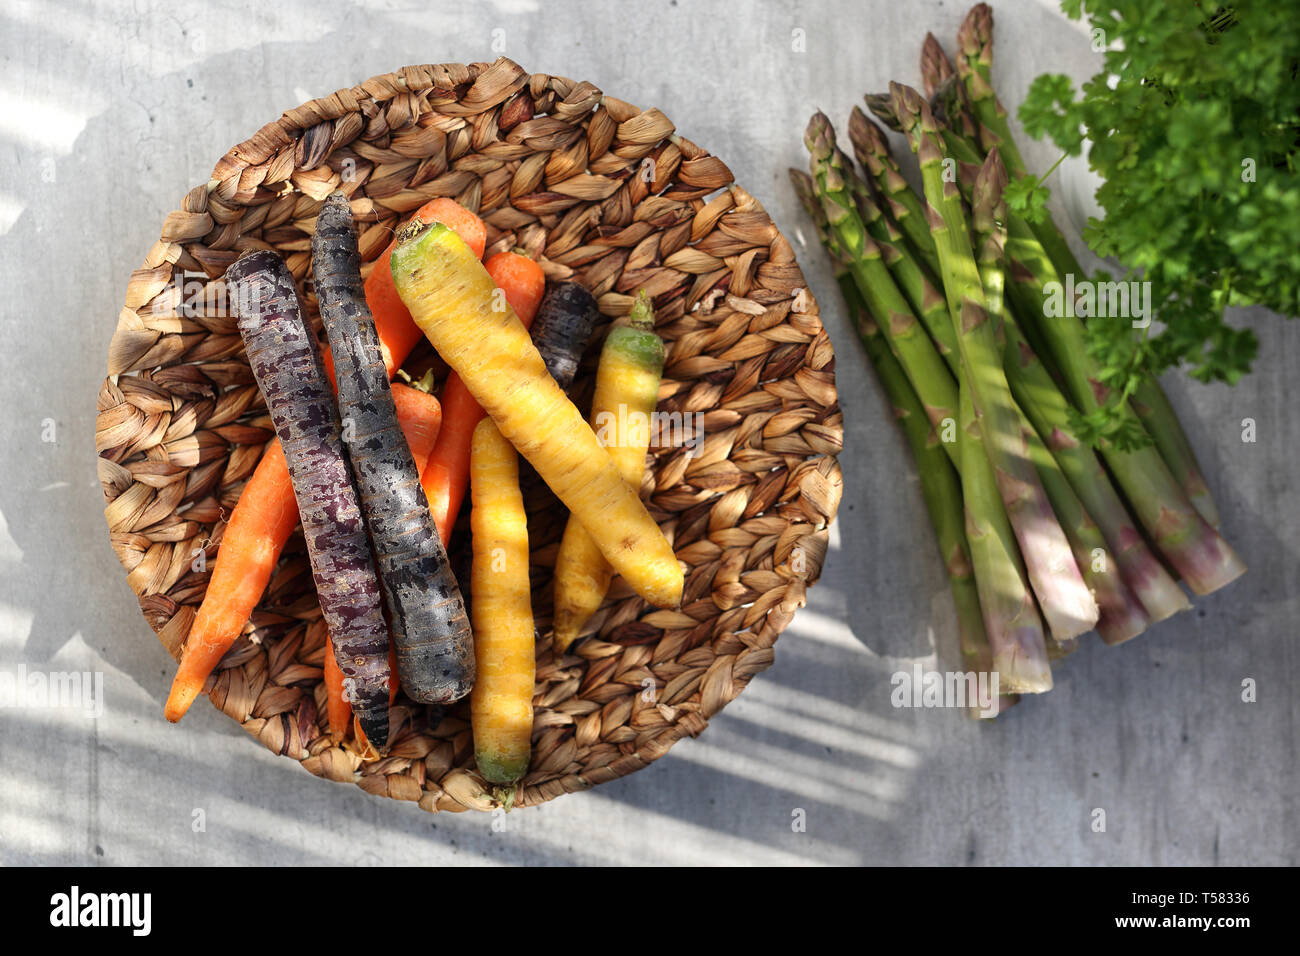 Colorate le carote e gli asparagi verdi. Il cestello con le verdure su un banco di cucina Foto Stock